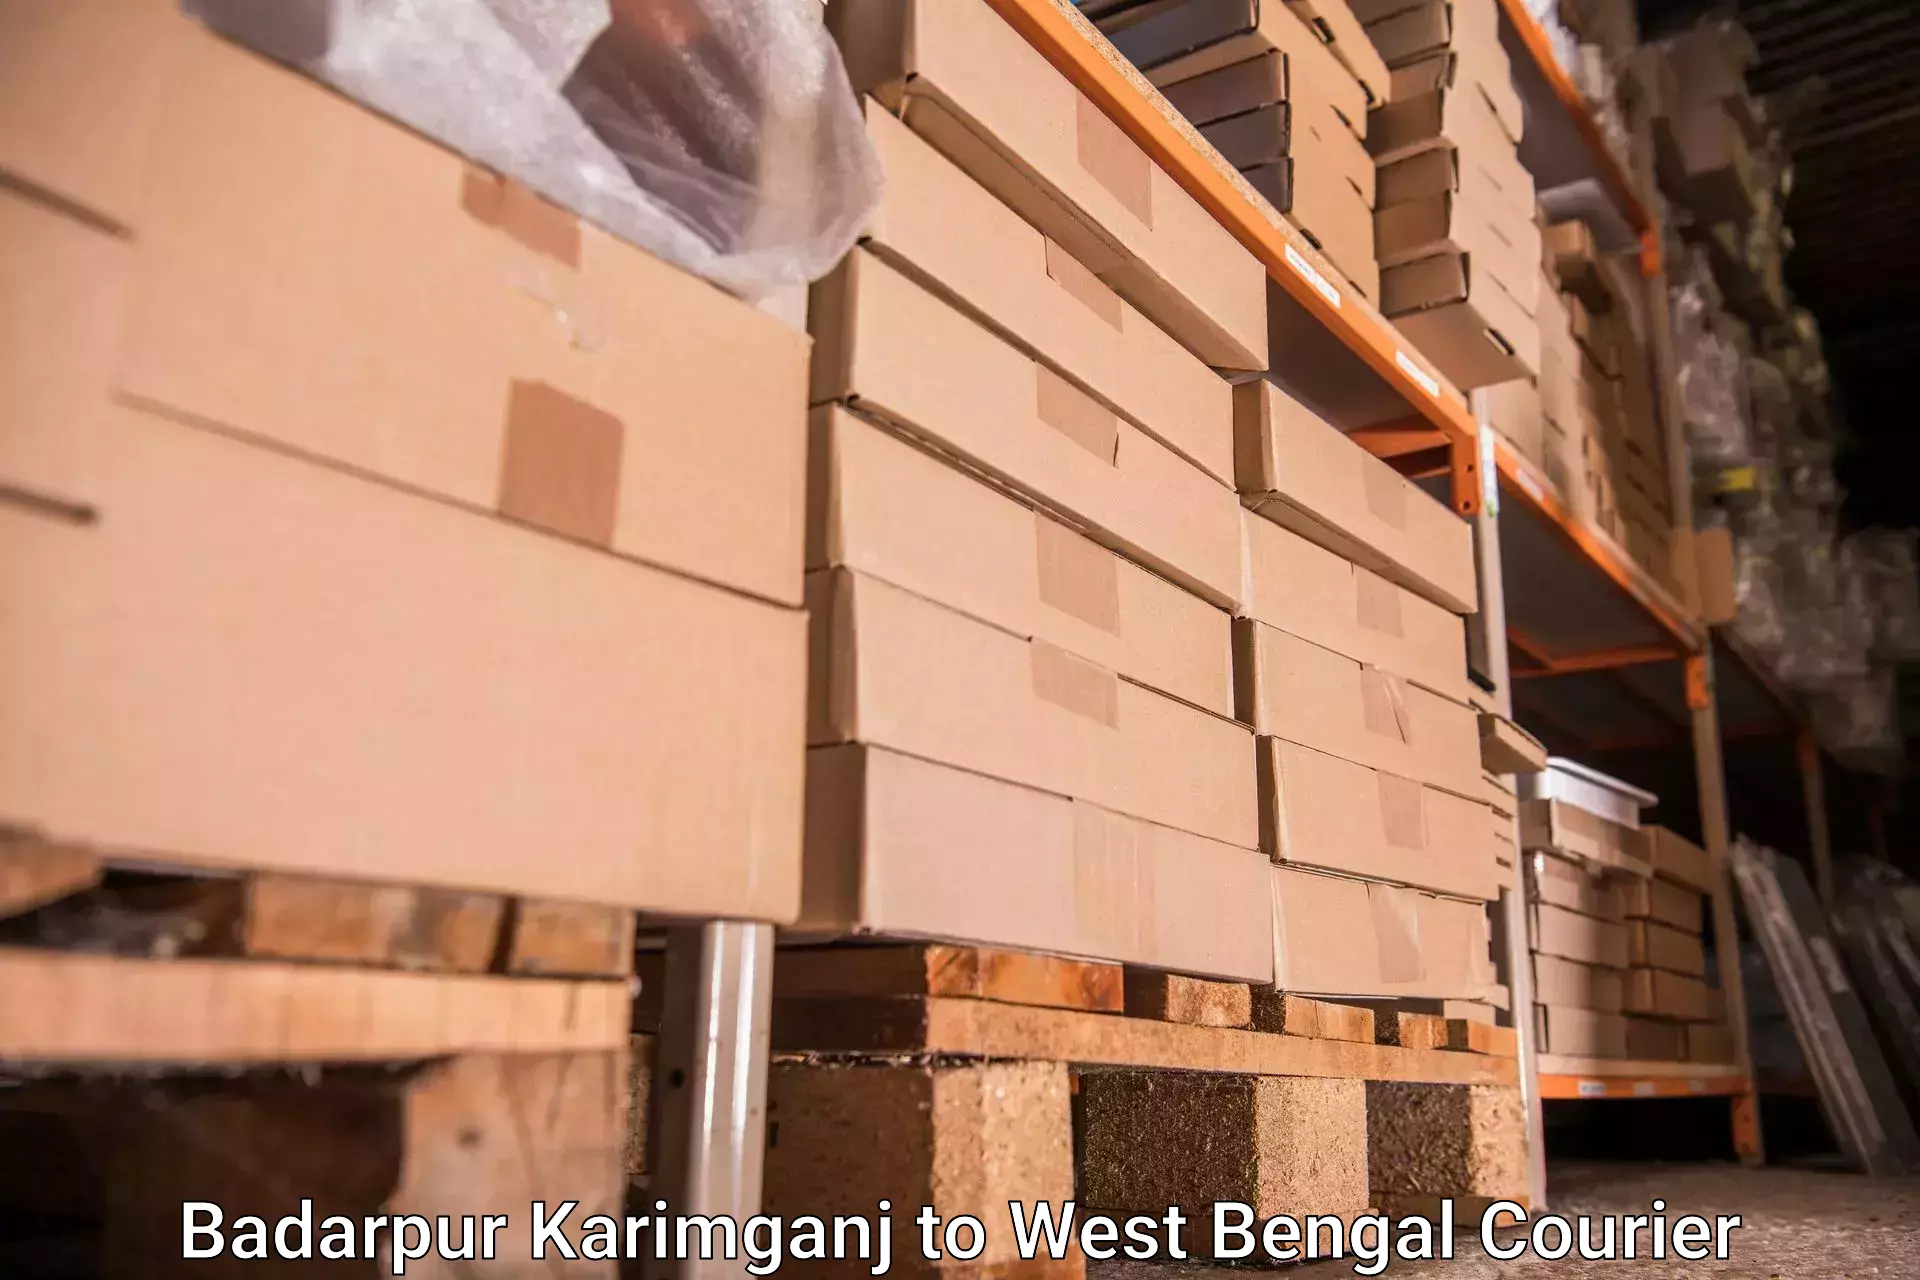 Luggage transport company Badarpur Karimganj to Lalgola